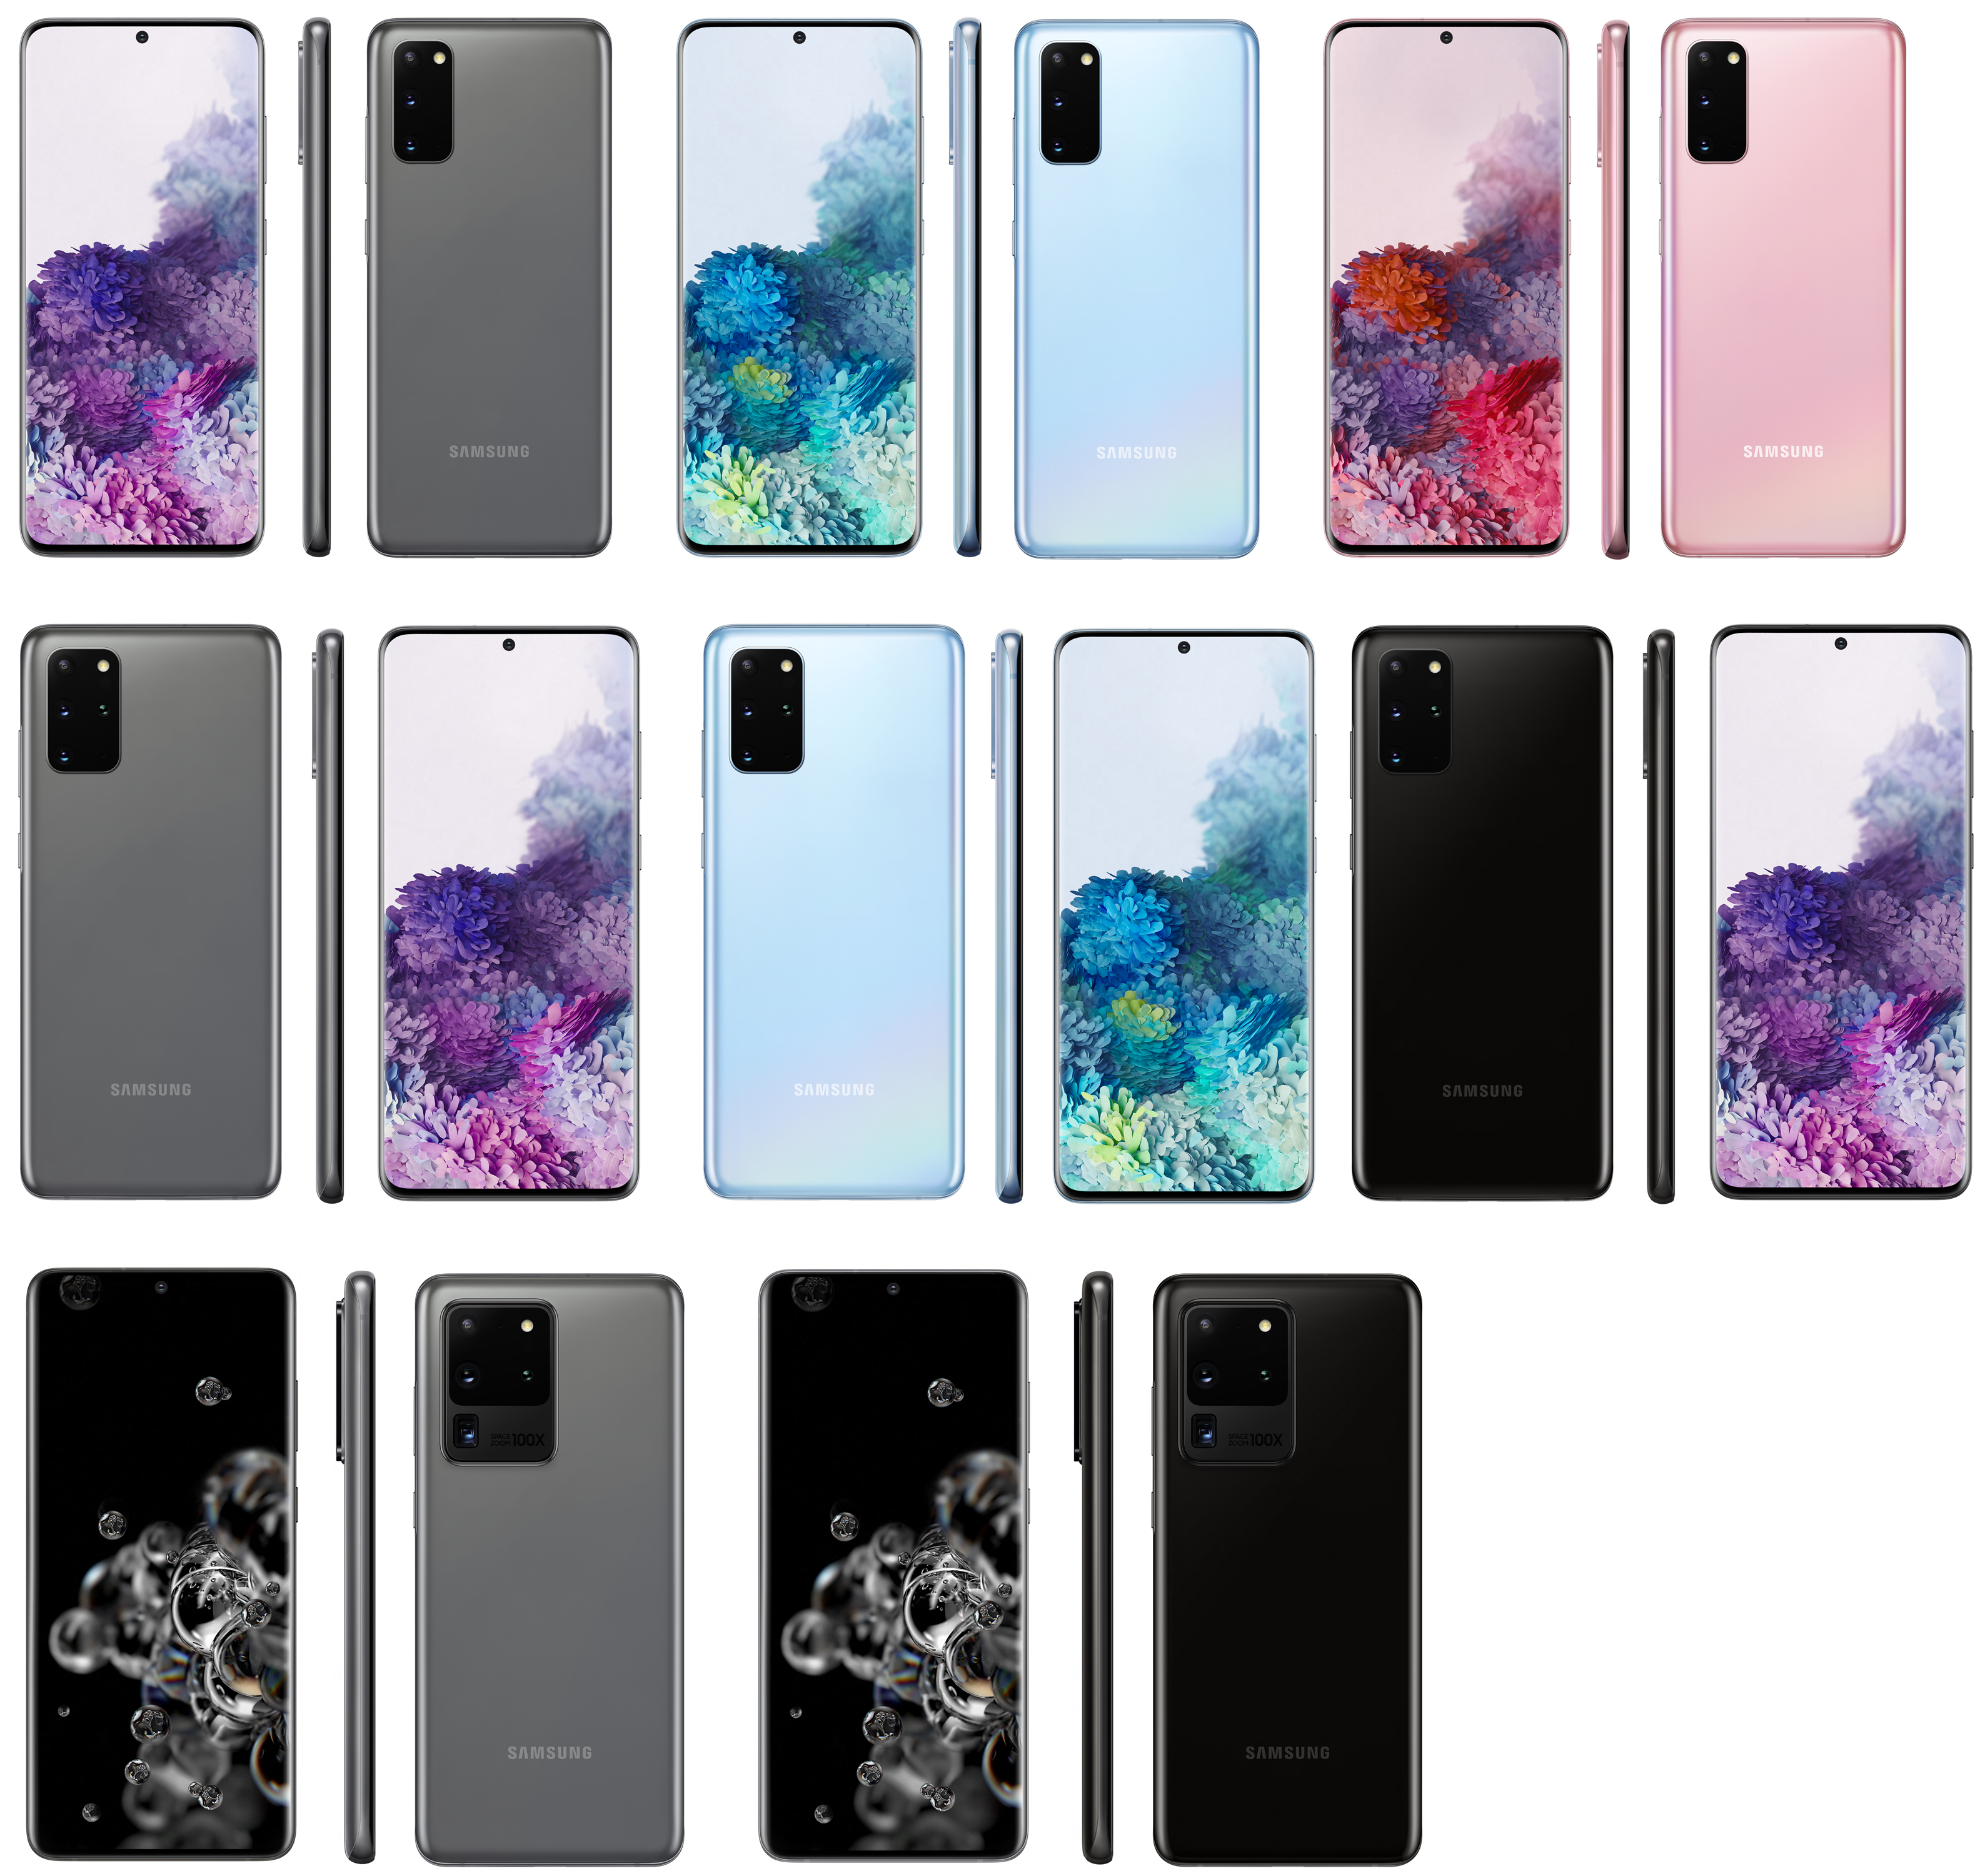 Покажи какие телефоны есть новые. Самсунг галакси s20. Samsung Galaxy s20 Ultra Samsung. Samsung Galaxy Galaxy s20. Самсунг s20 Ultra цвета.